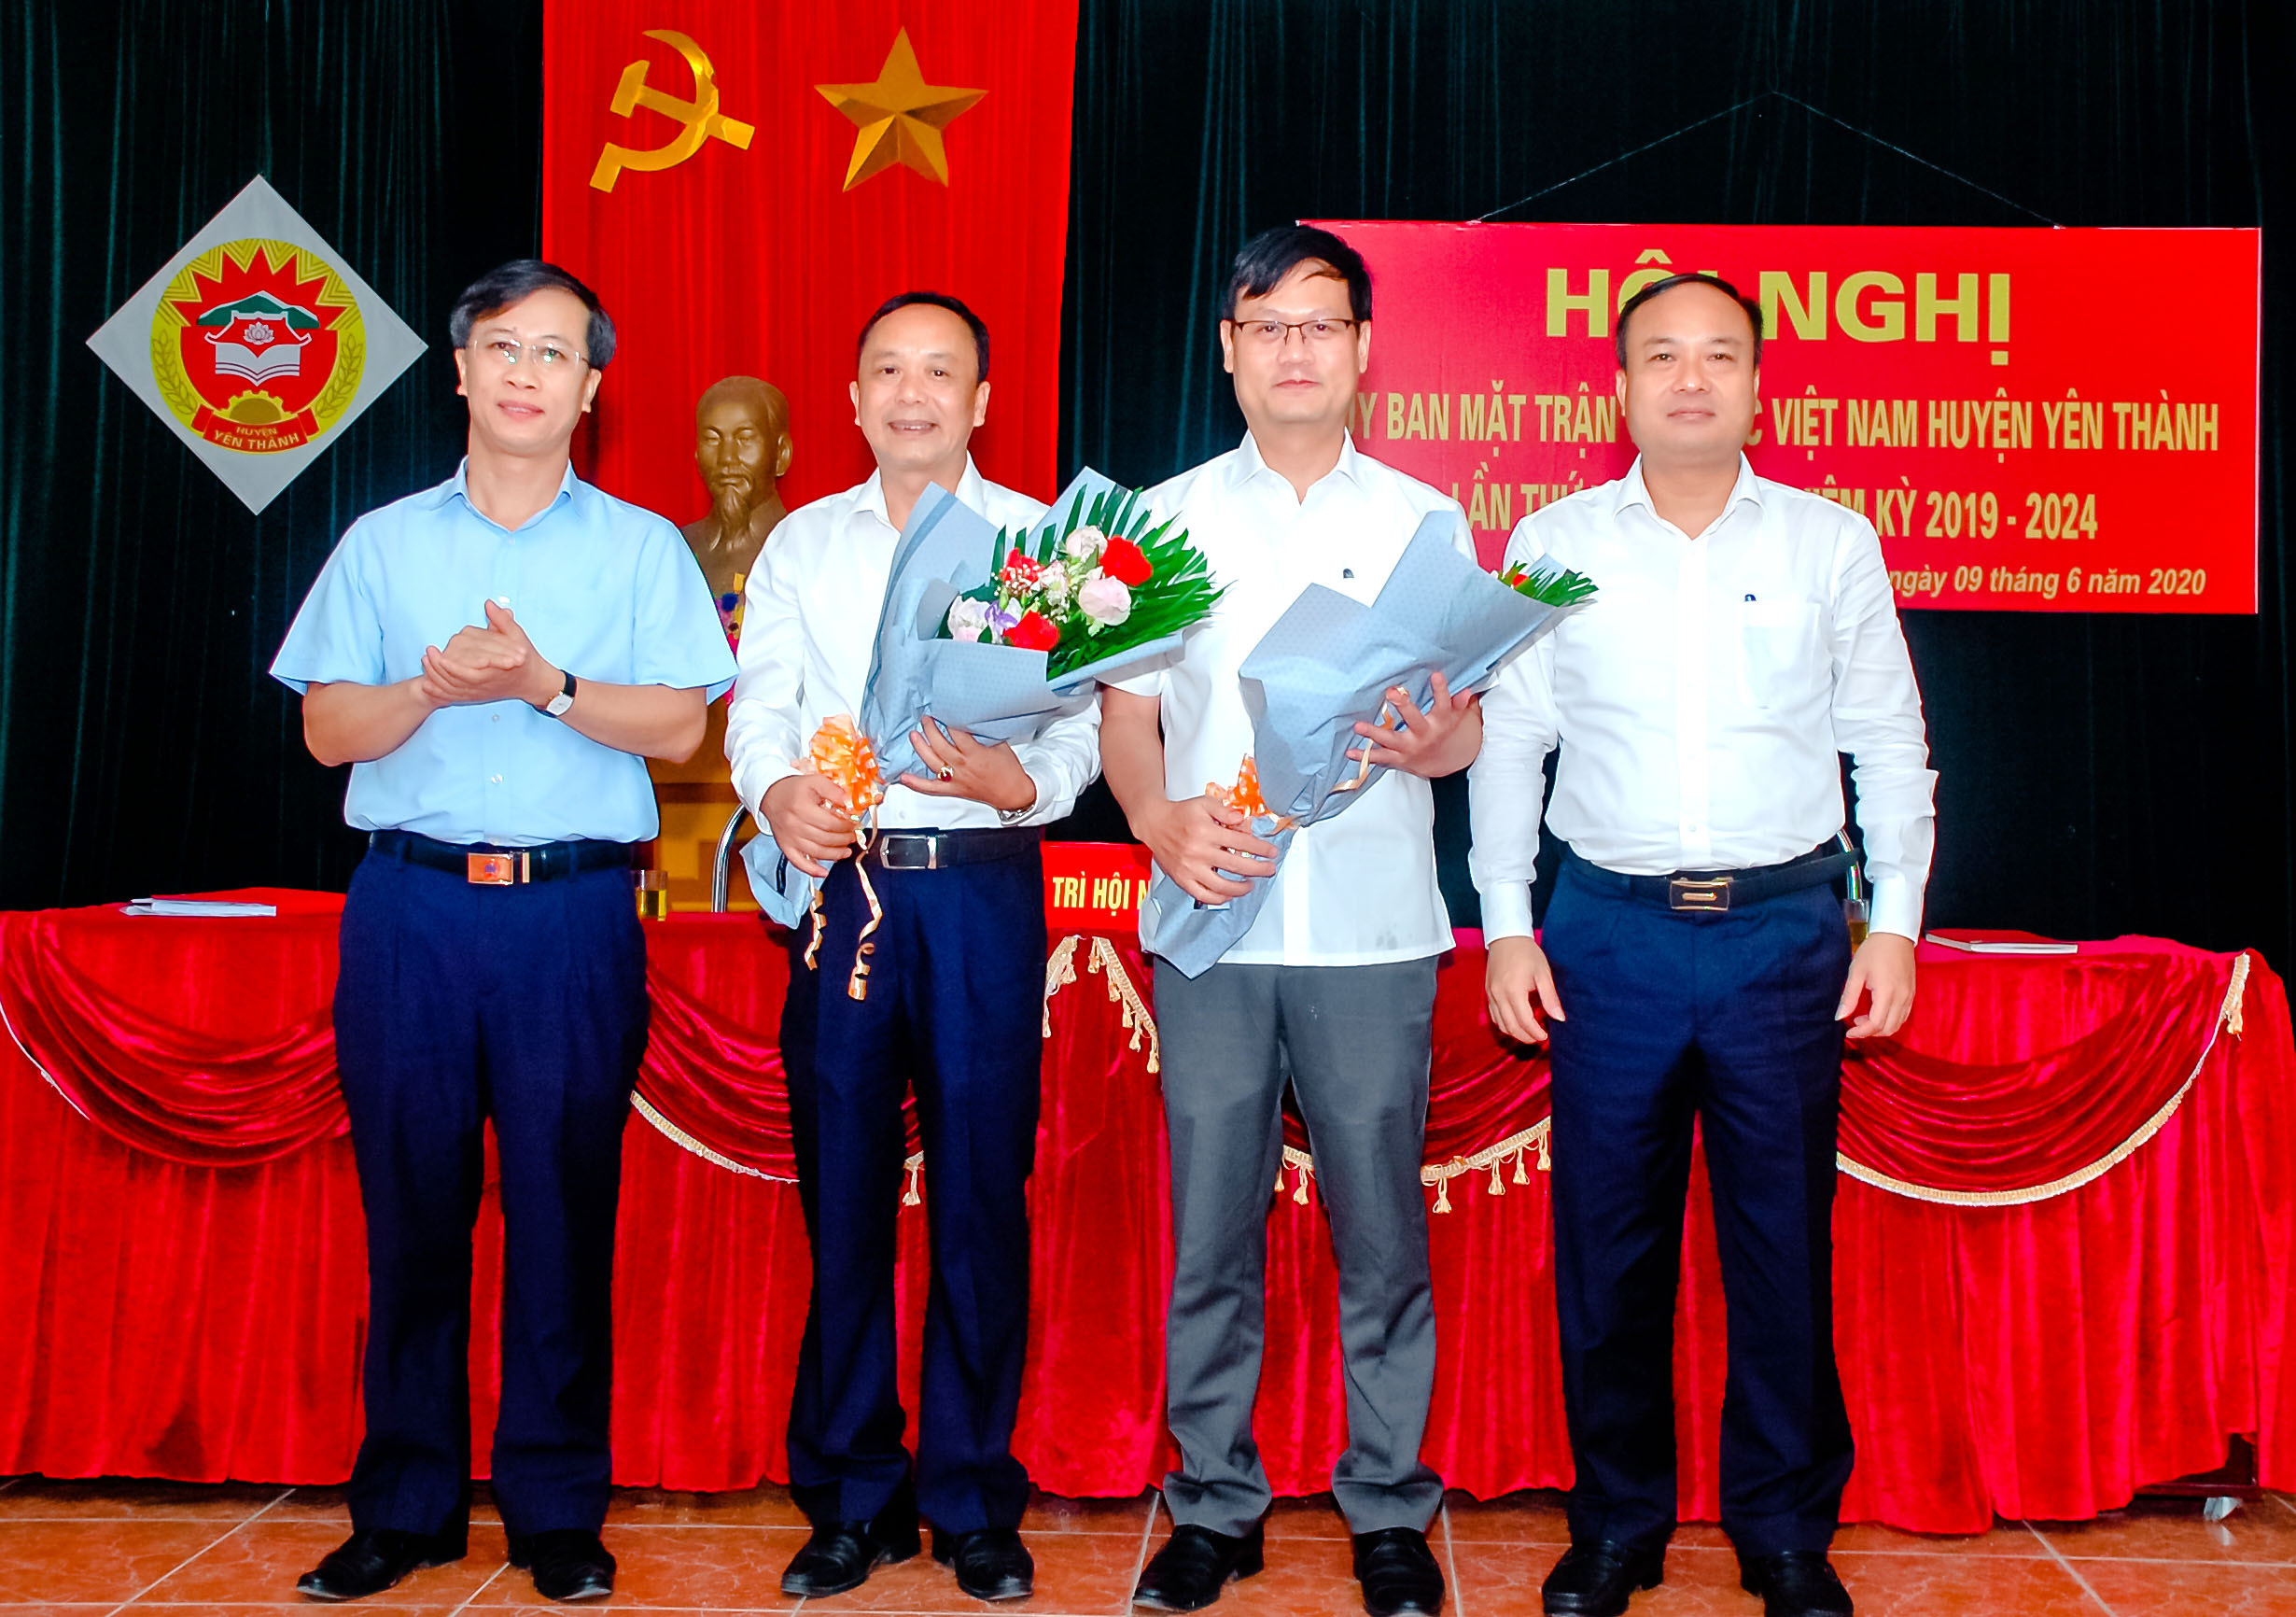 Tặng hoa chúc mừng các đồng chí được hội nghị hiệp thương bầu Chủ tịch và Phó chủ tịch Ủy ban MTTQ huyện Yên Thành. Ảnh: Anh Tuấn 